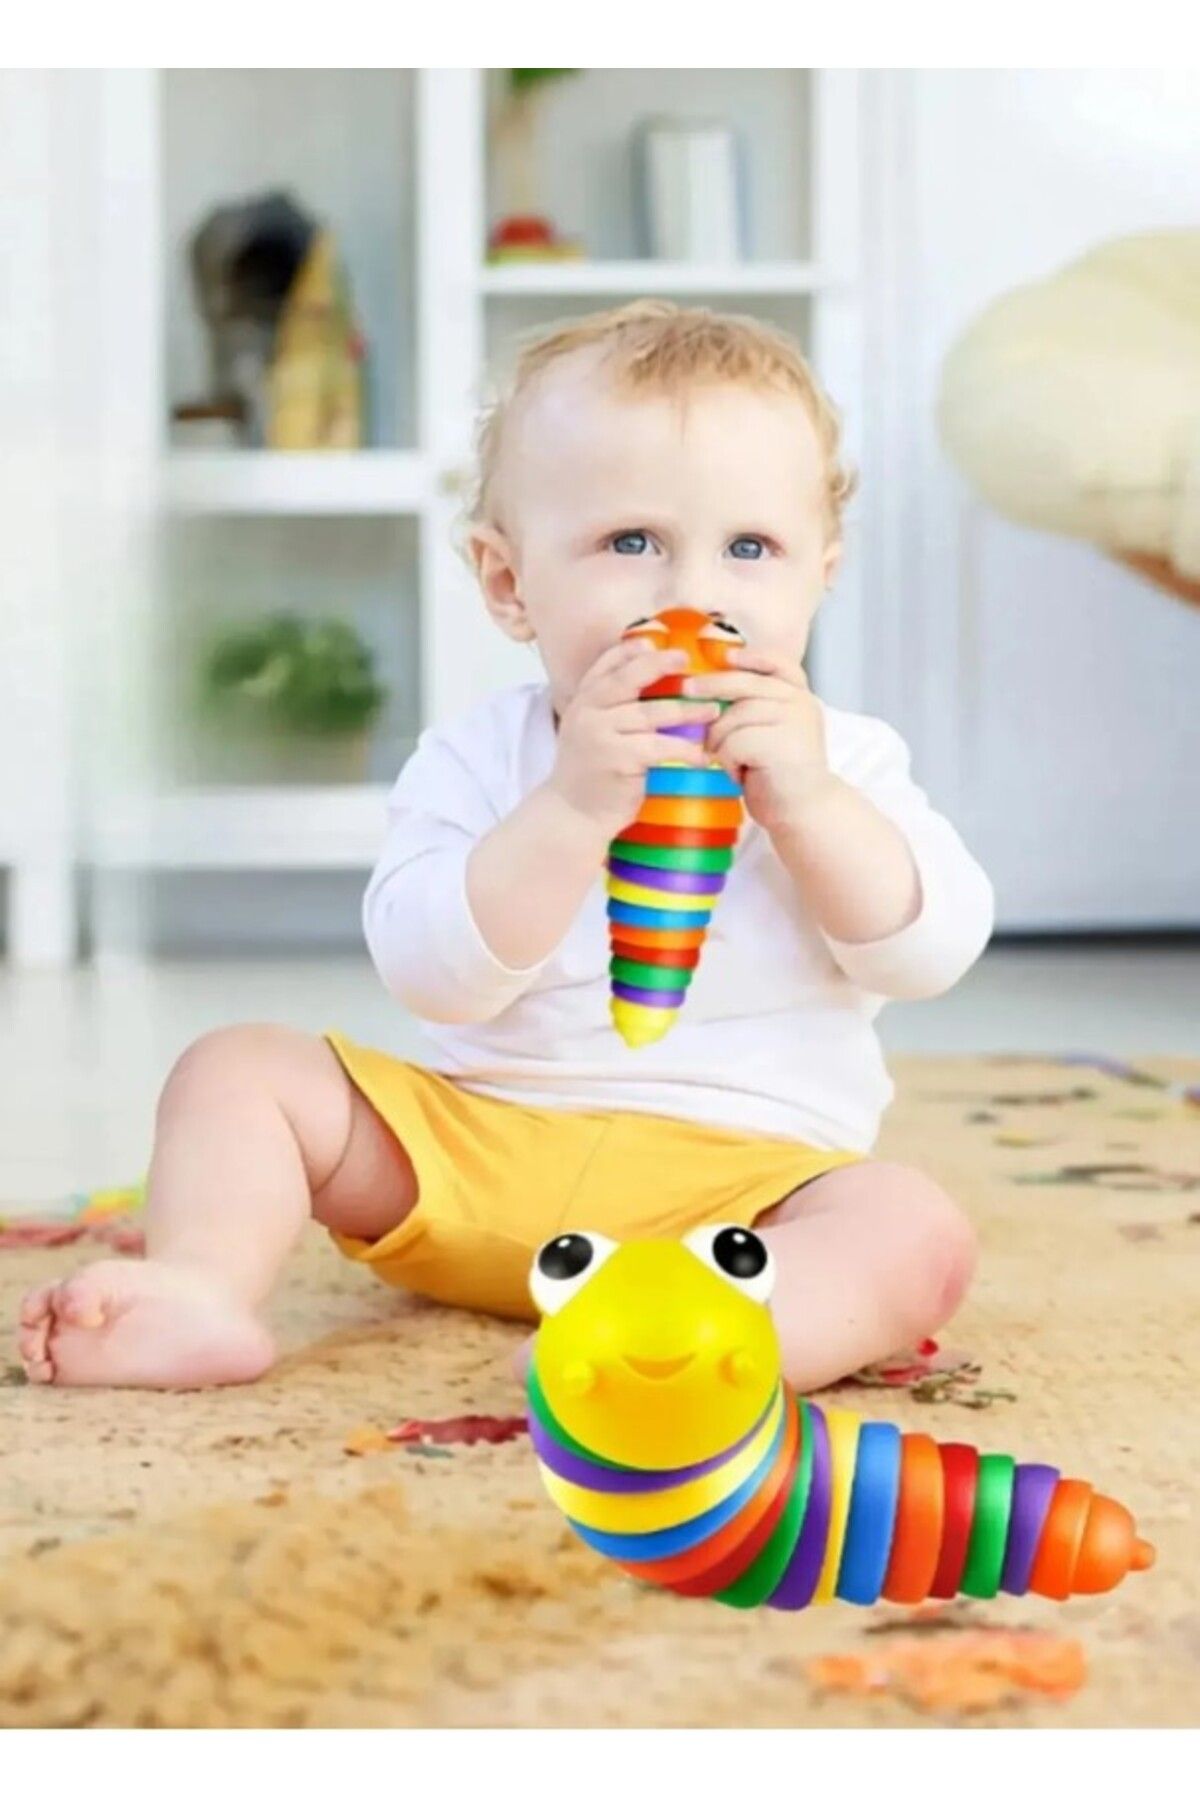 KİNG VEGAS TİCARET Söktak Eğlenceli, Stres ve Anksiyete Giderici Montessori Tırtıl Oyuncağı Renkli